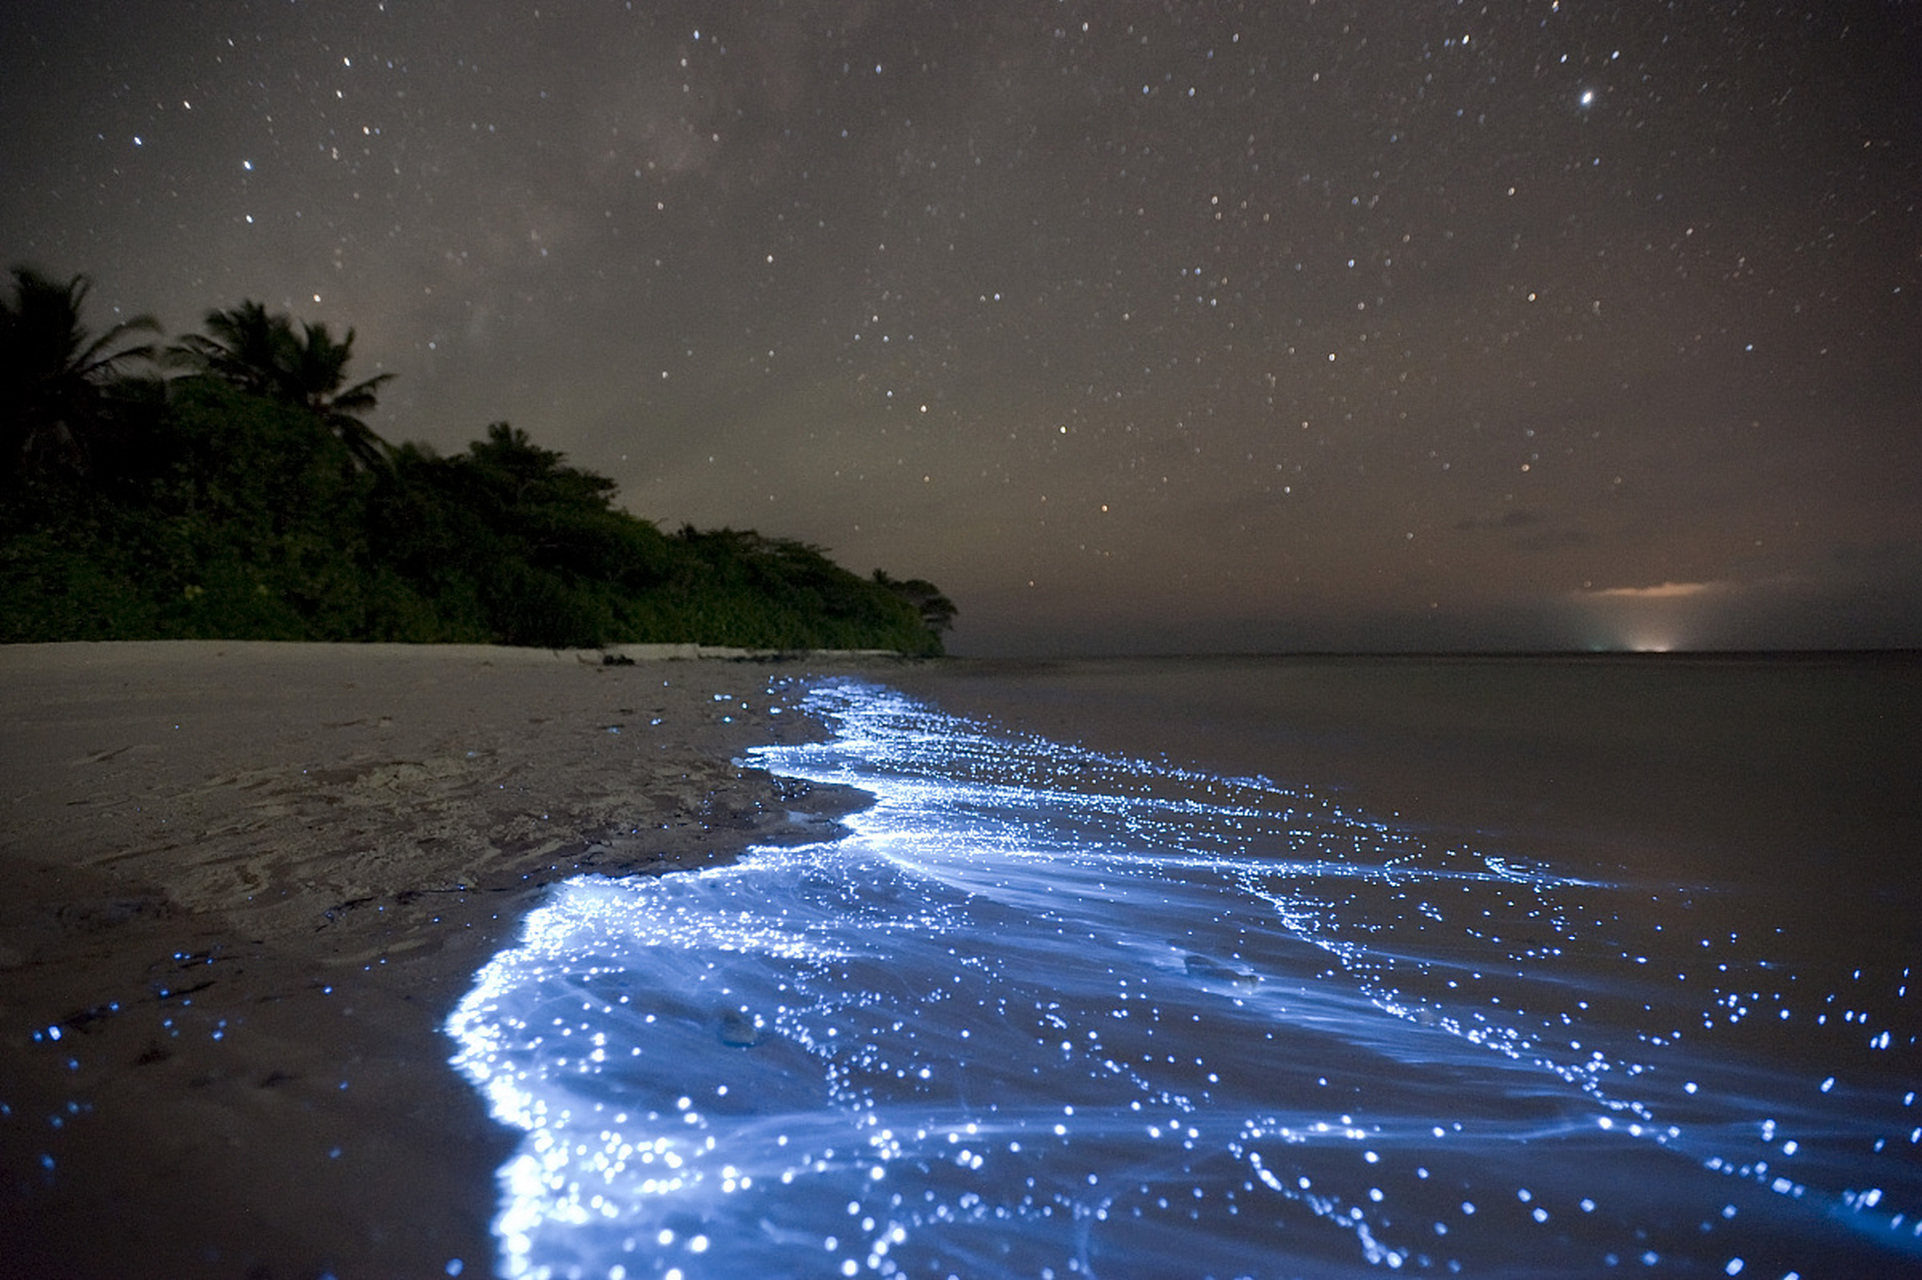 荧光海滩怎么形成图片